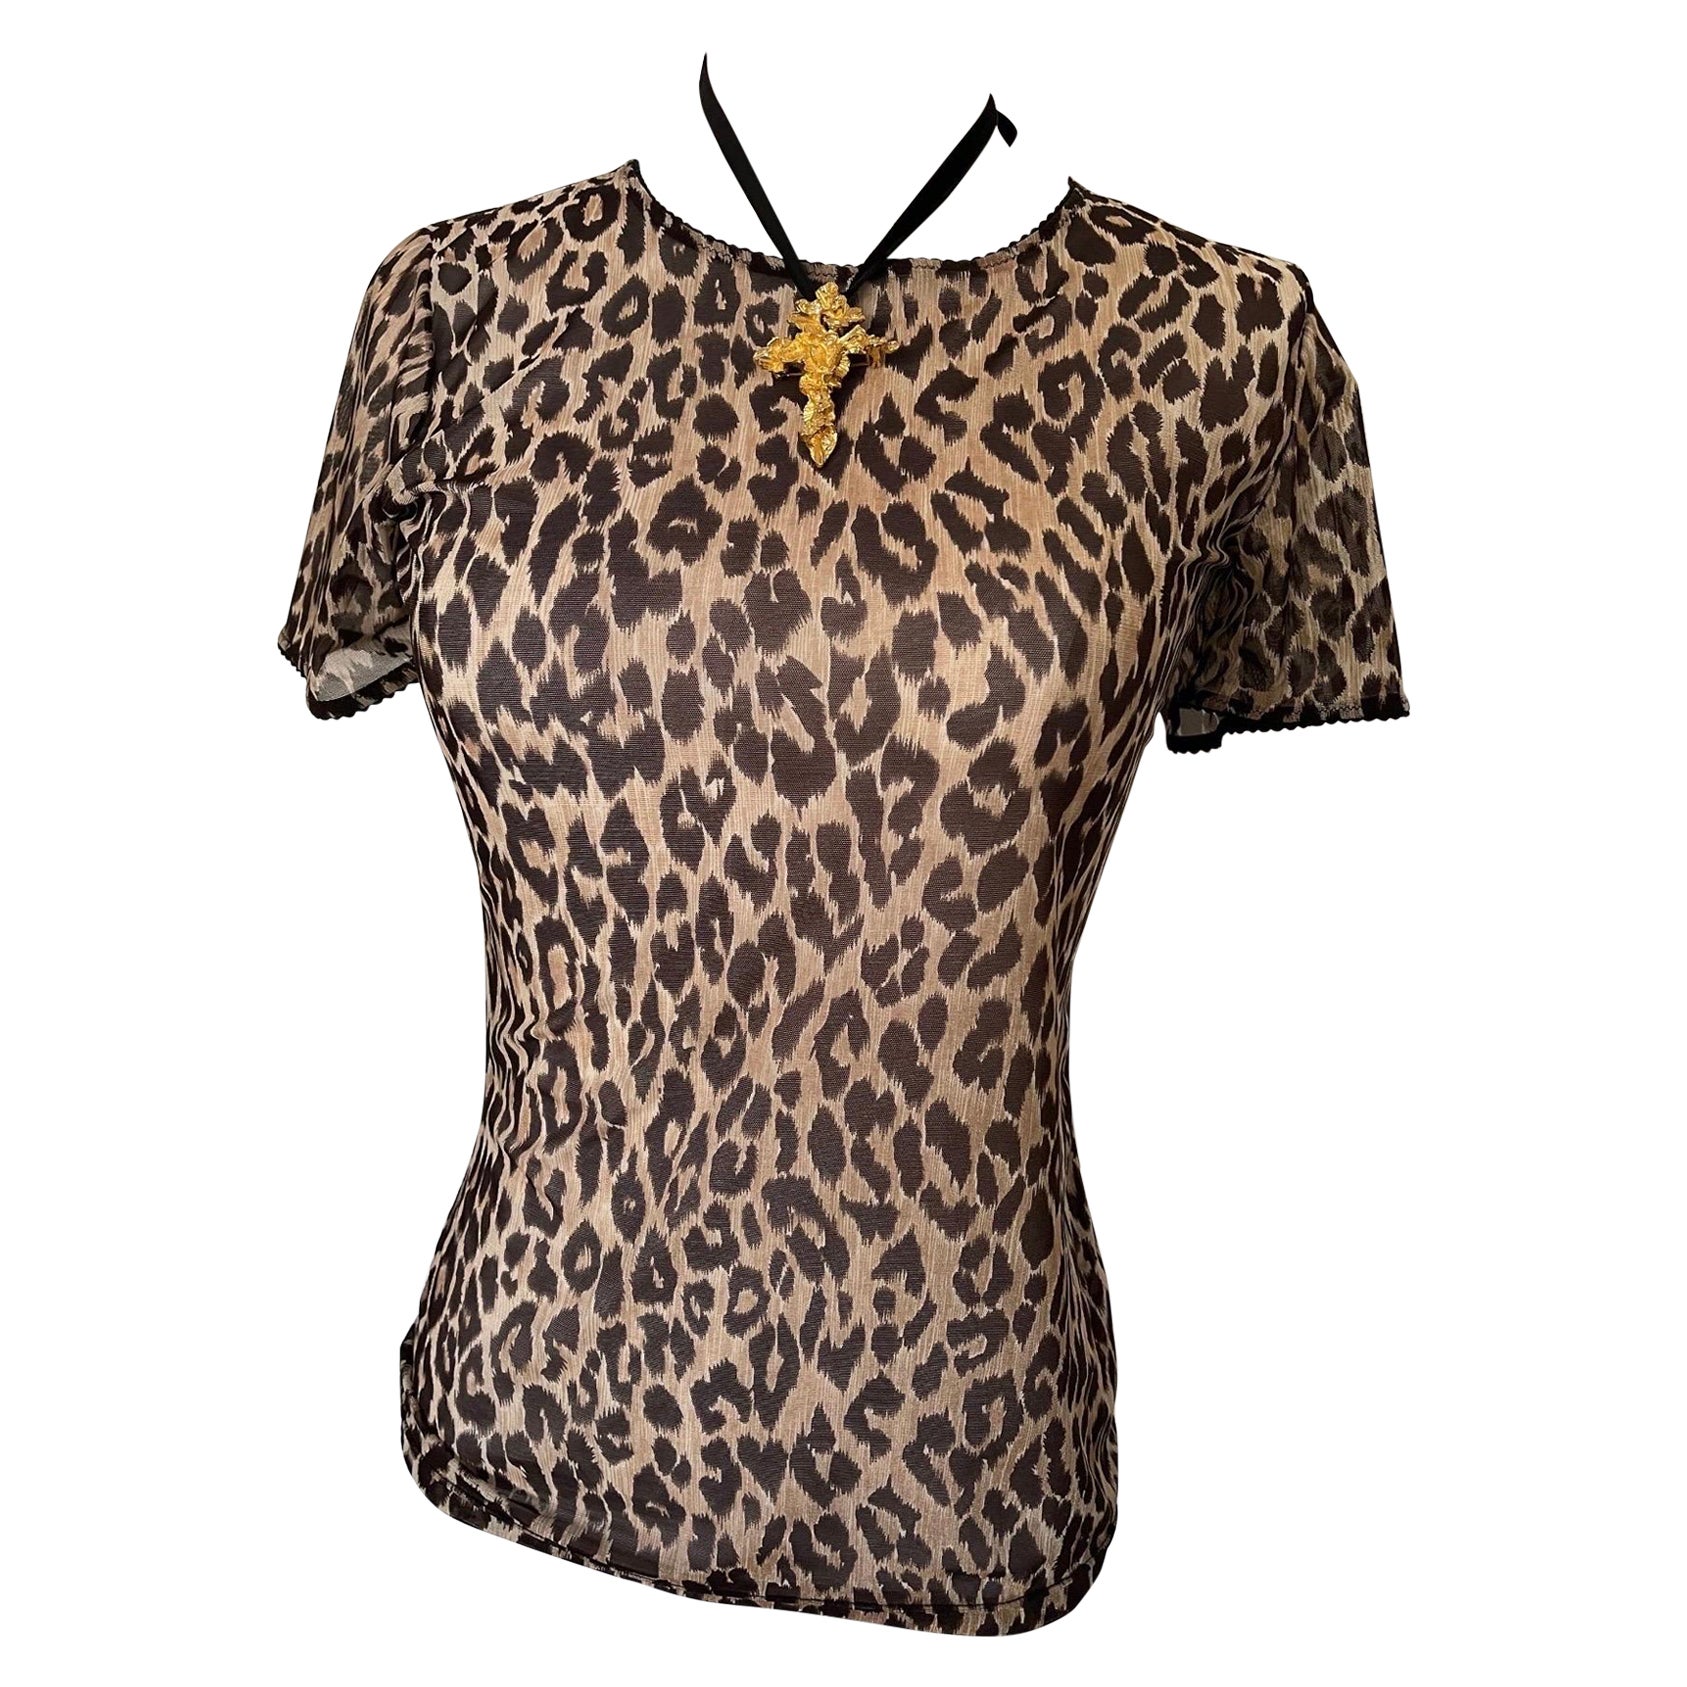 Dolce & Gabbana T-Shirt-Top mit durchsichtigem Gepardenmuster und Rüschenspitze